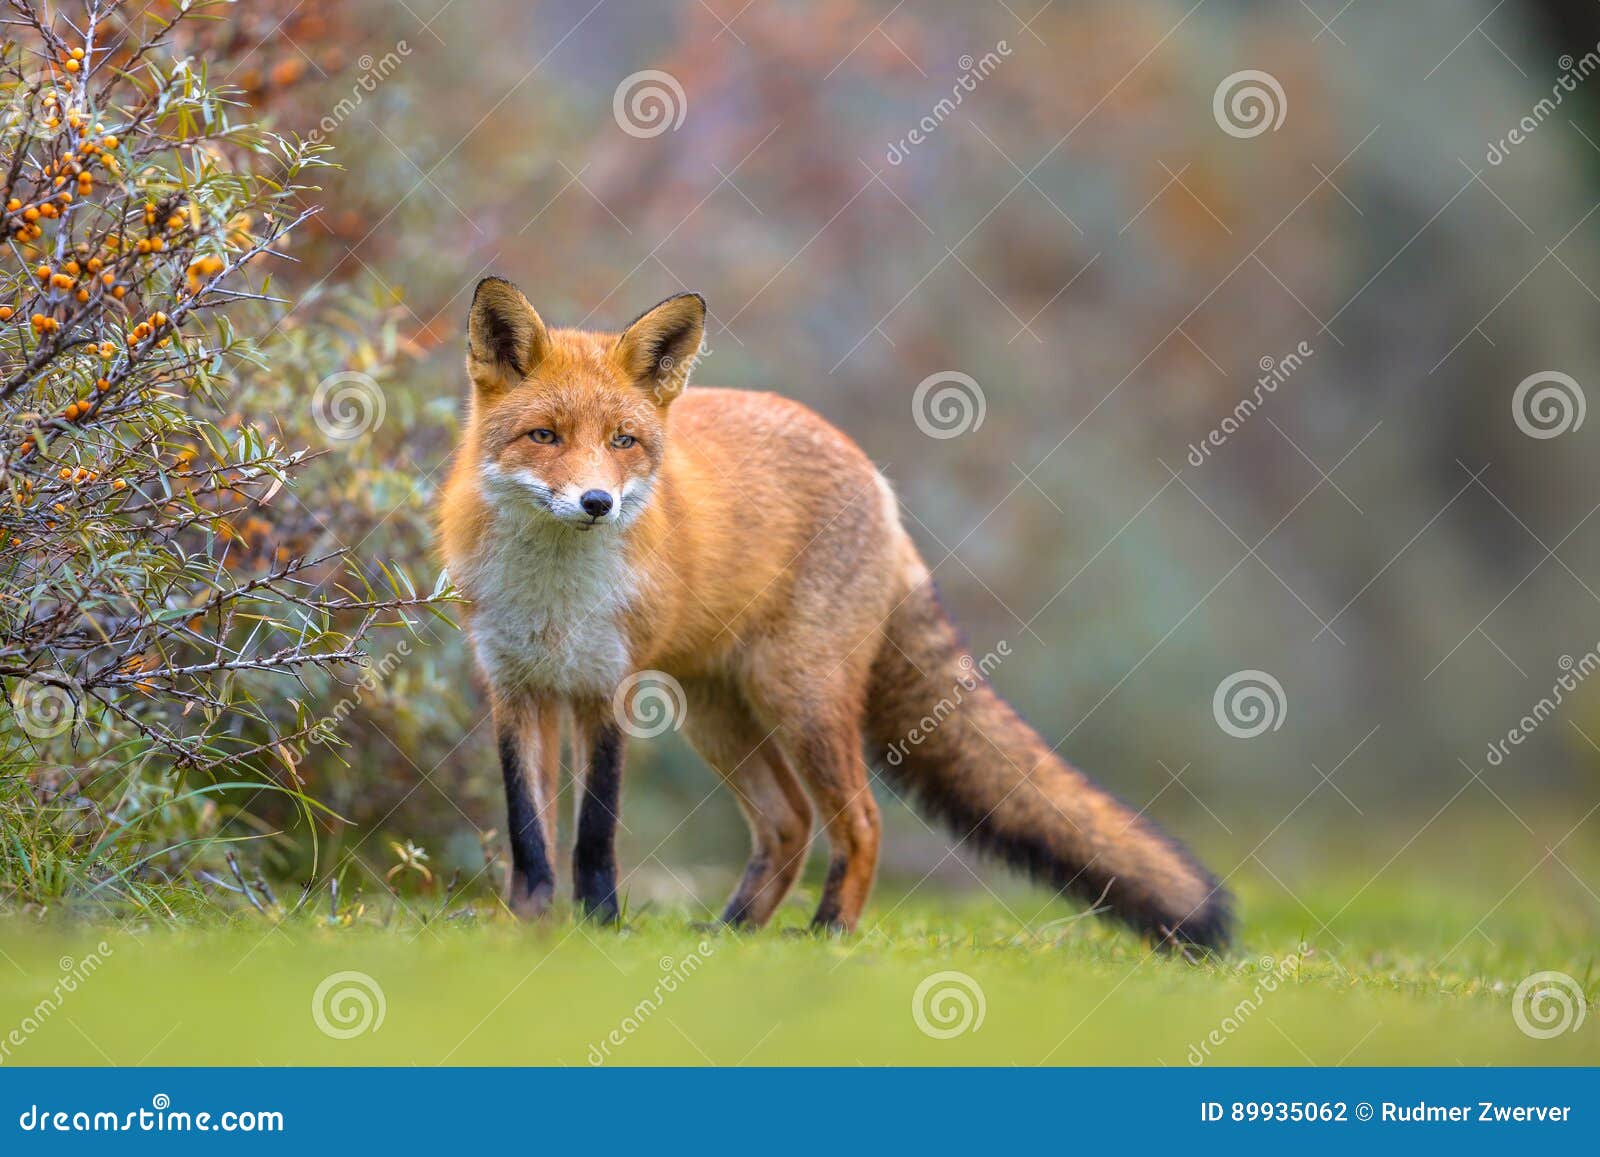 fox walking in dune vegetation